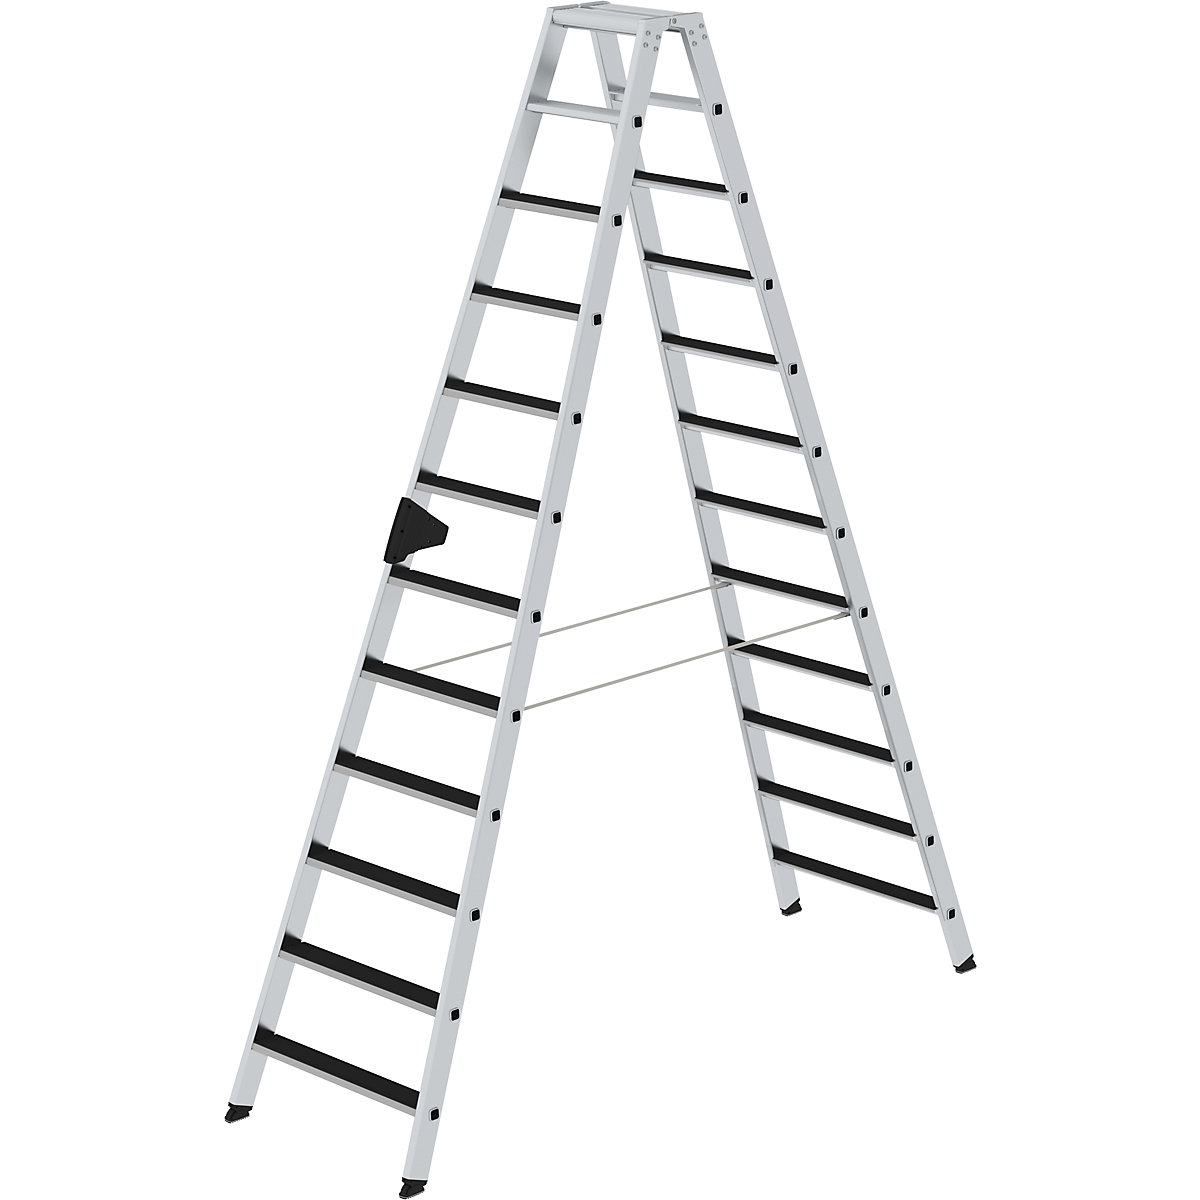 Dvokraka lestev s stopnicami CLIP-STEP – MUNK, obojestransko vzpenjanje, narebrene, št. stopnic 2 x 12